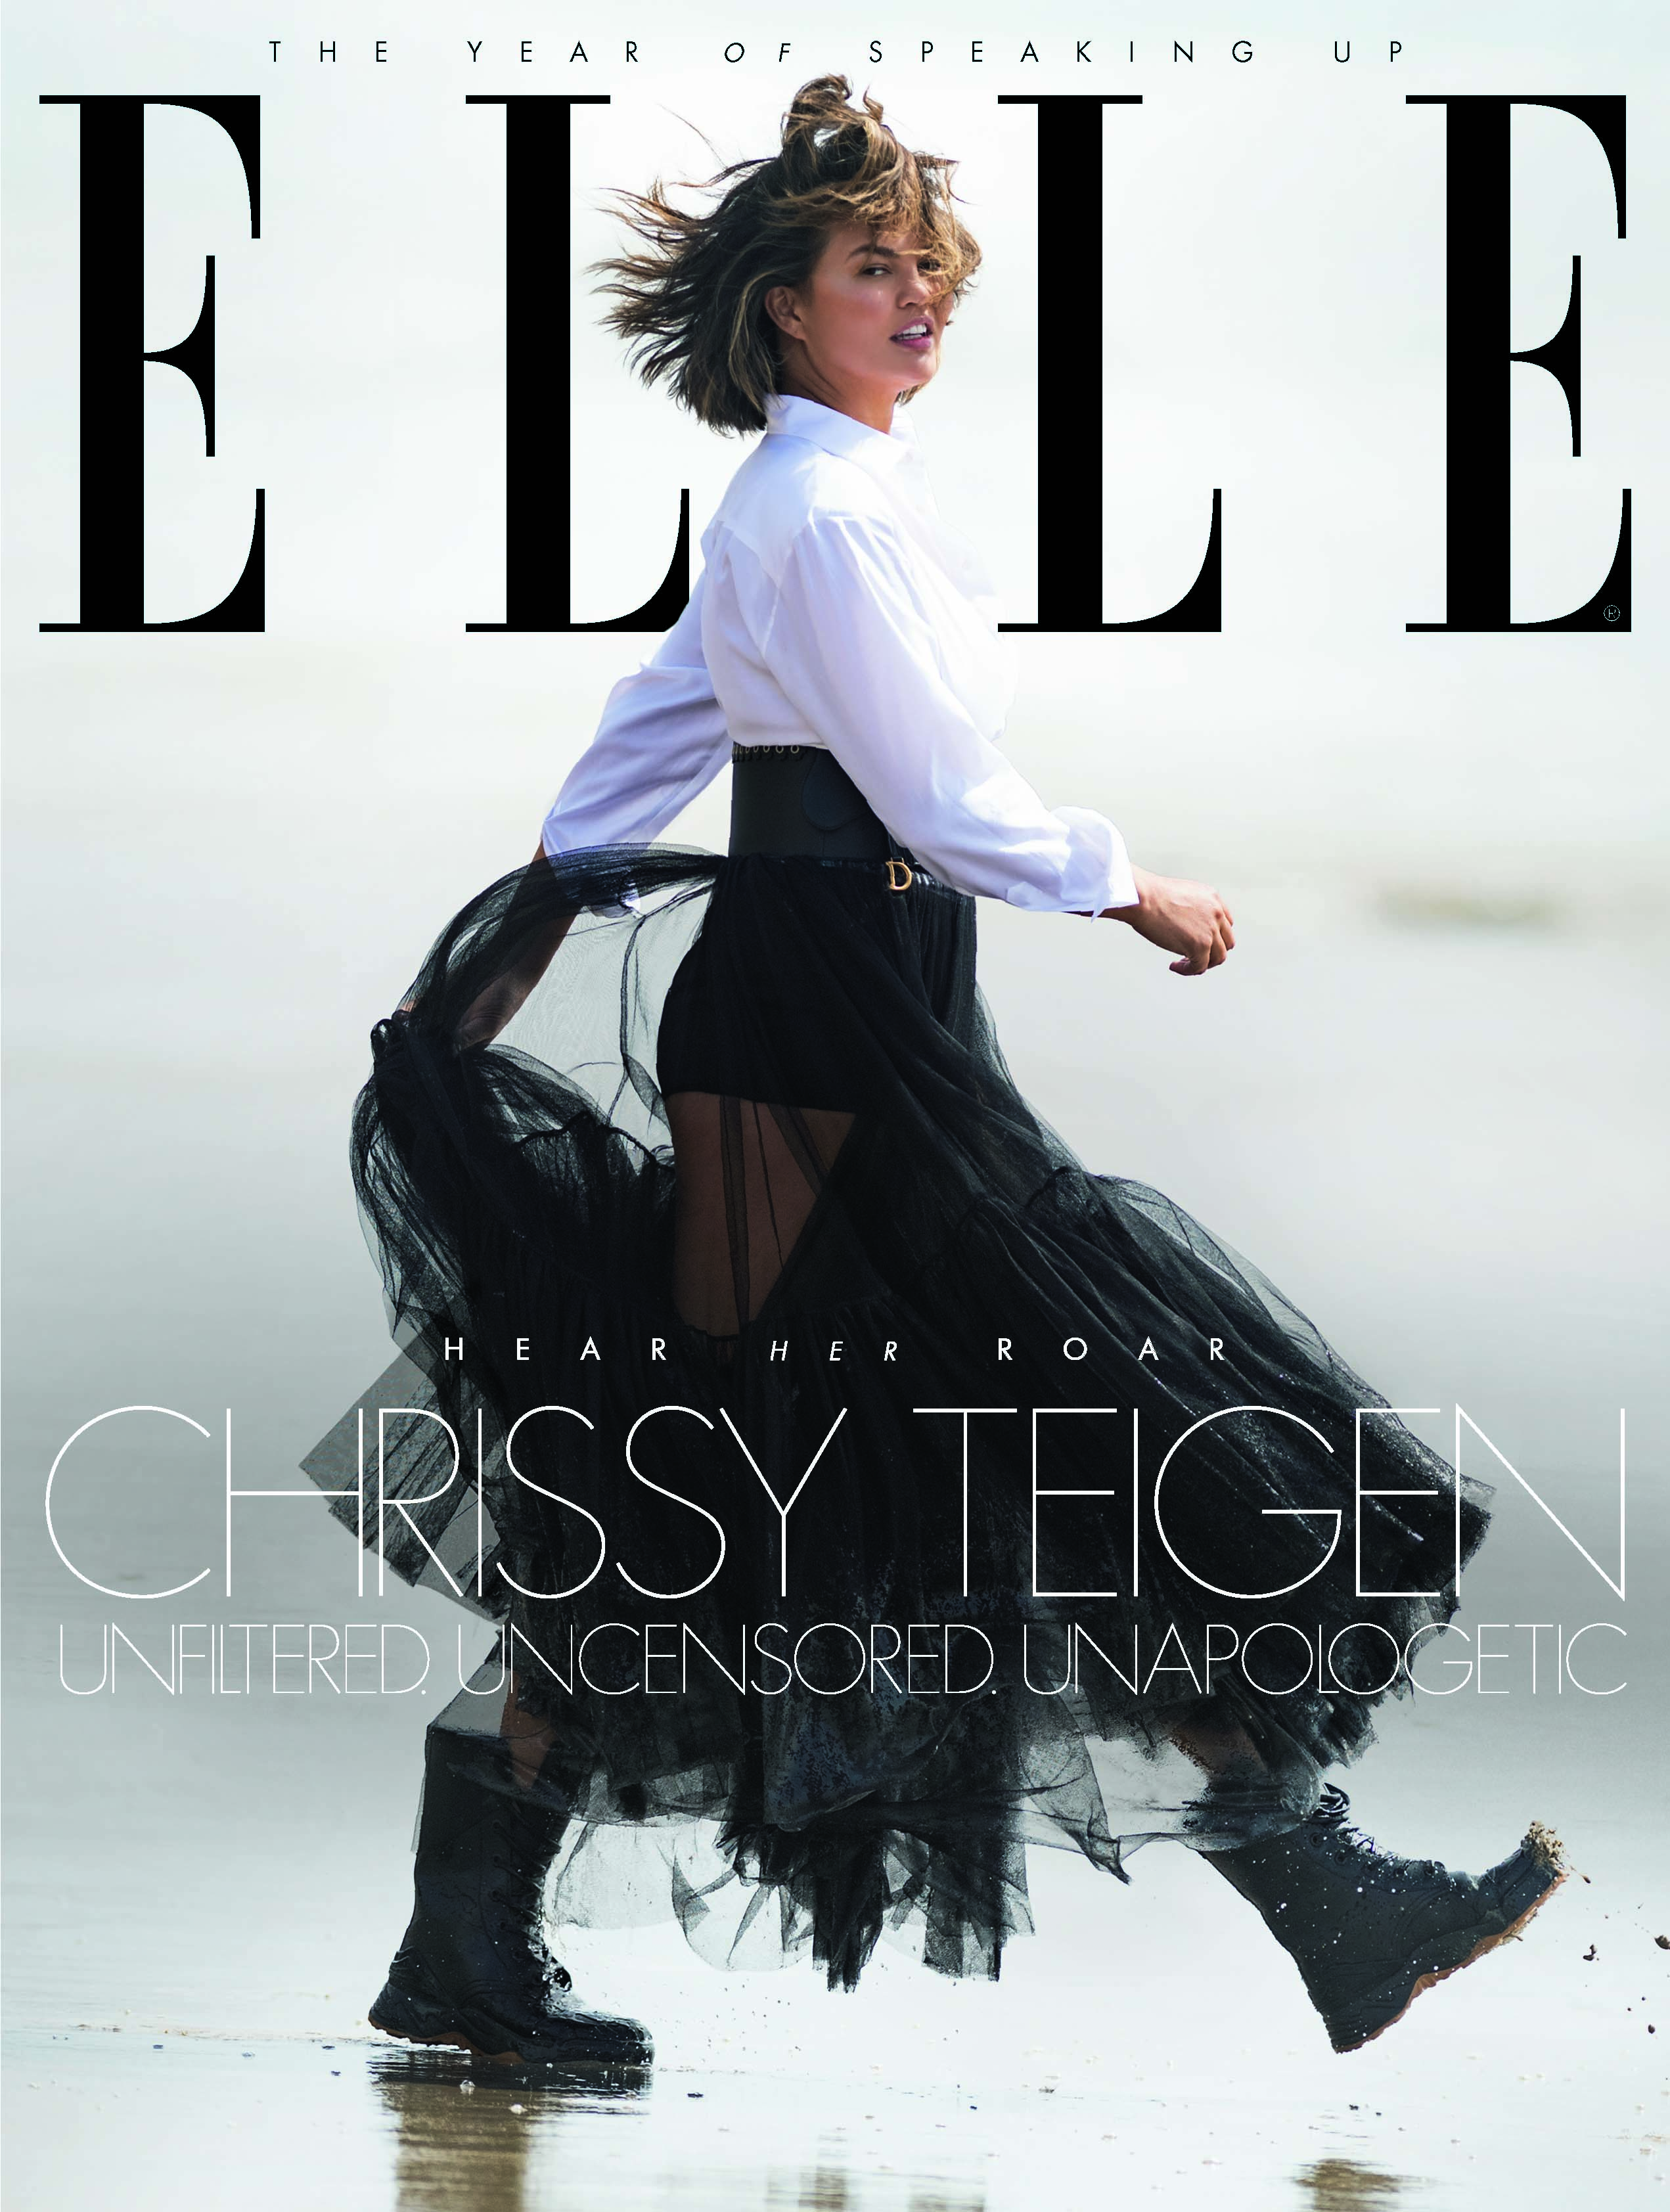 Chrissy Teigen on the cover of Elle UK